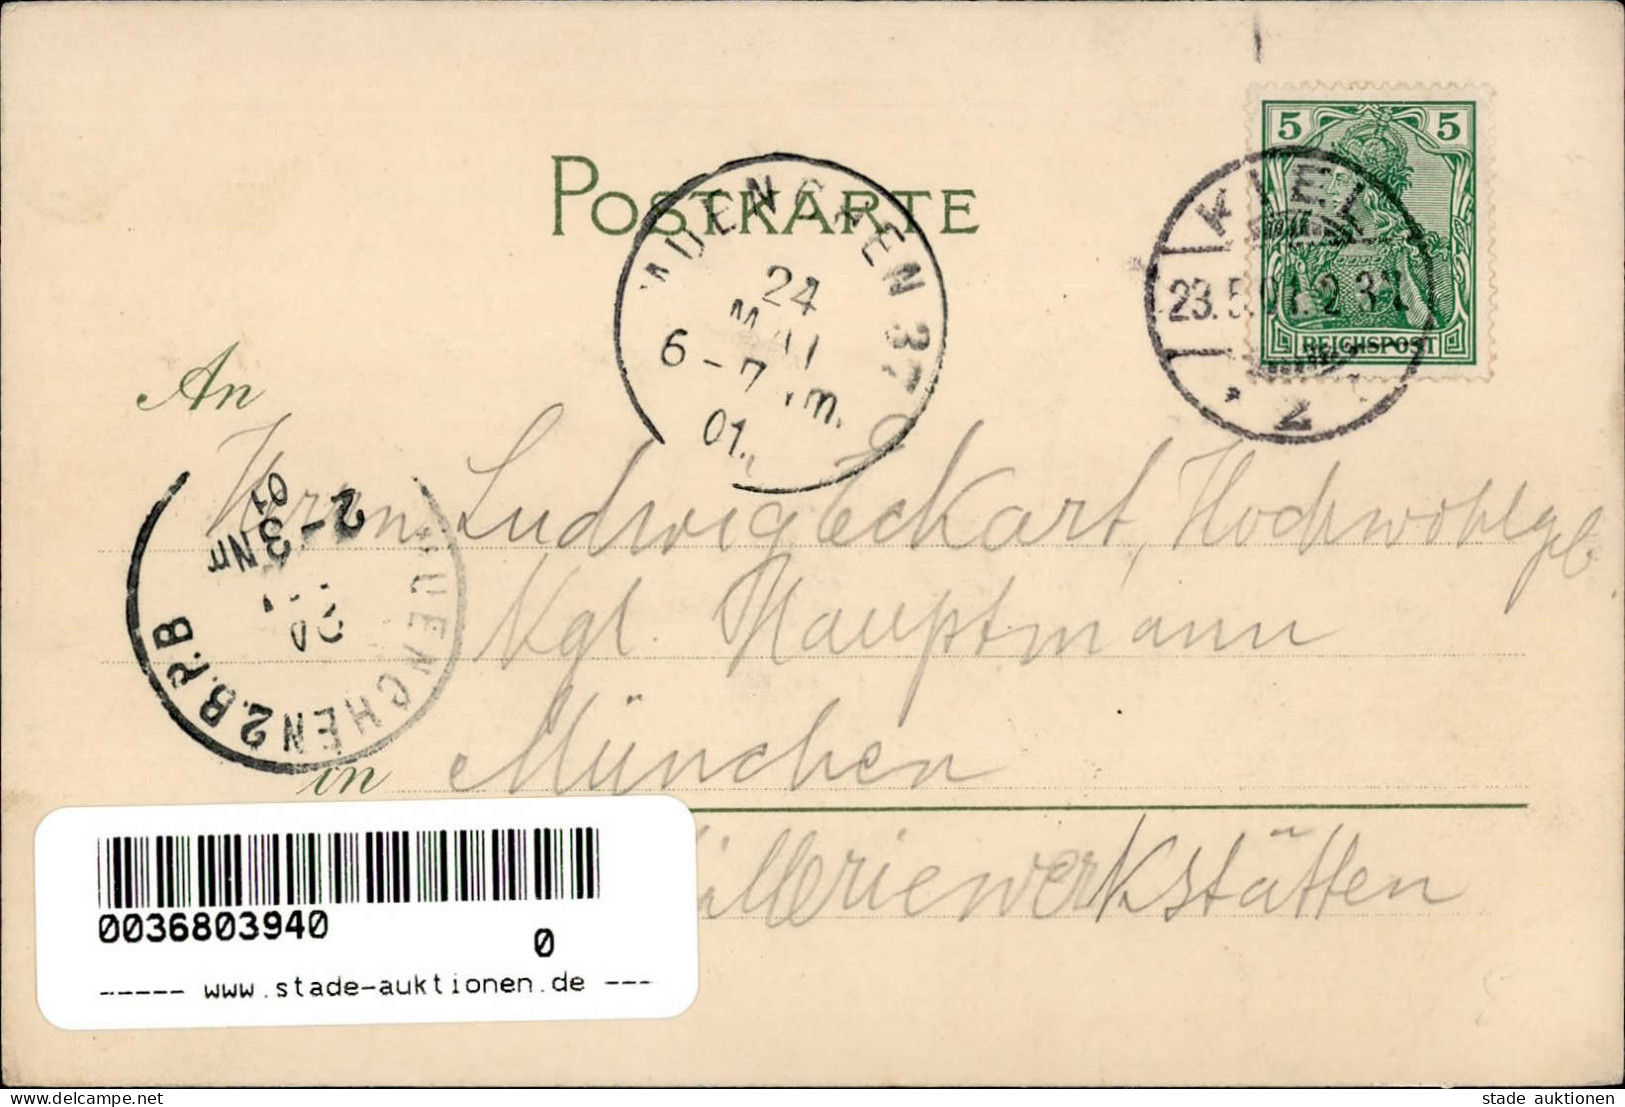 Schiff Dampfschiff Darmstadt Mit Dem Seebataillon Nach China Sign. Stöwer, Willy I-II Bateaux Bateaux - Weltkrieg 1914-18